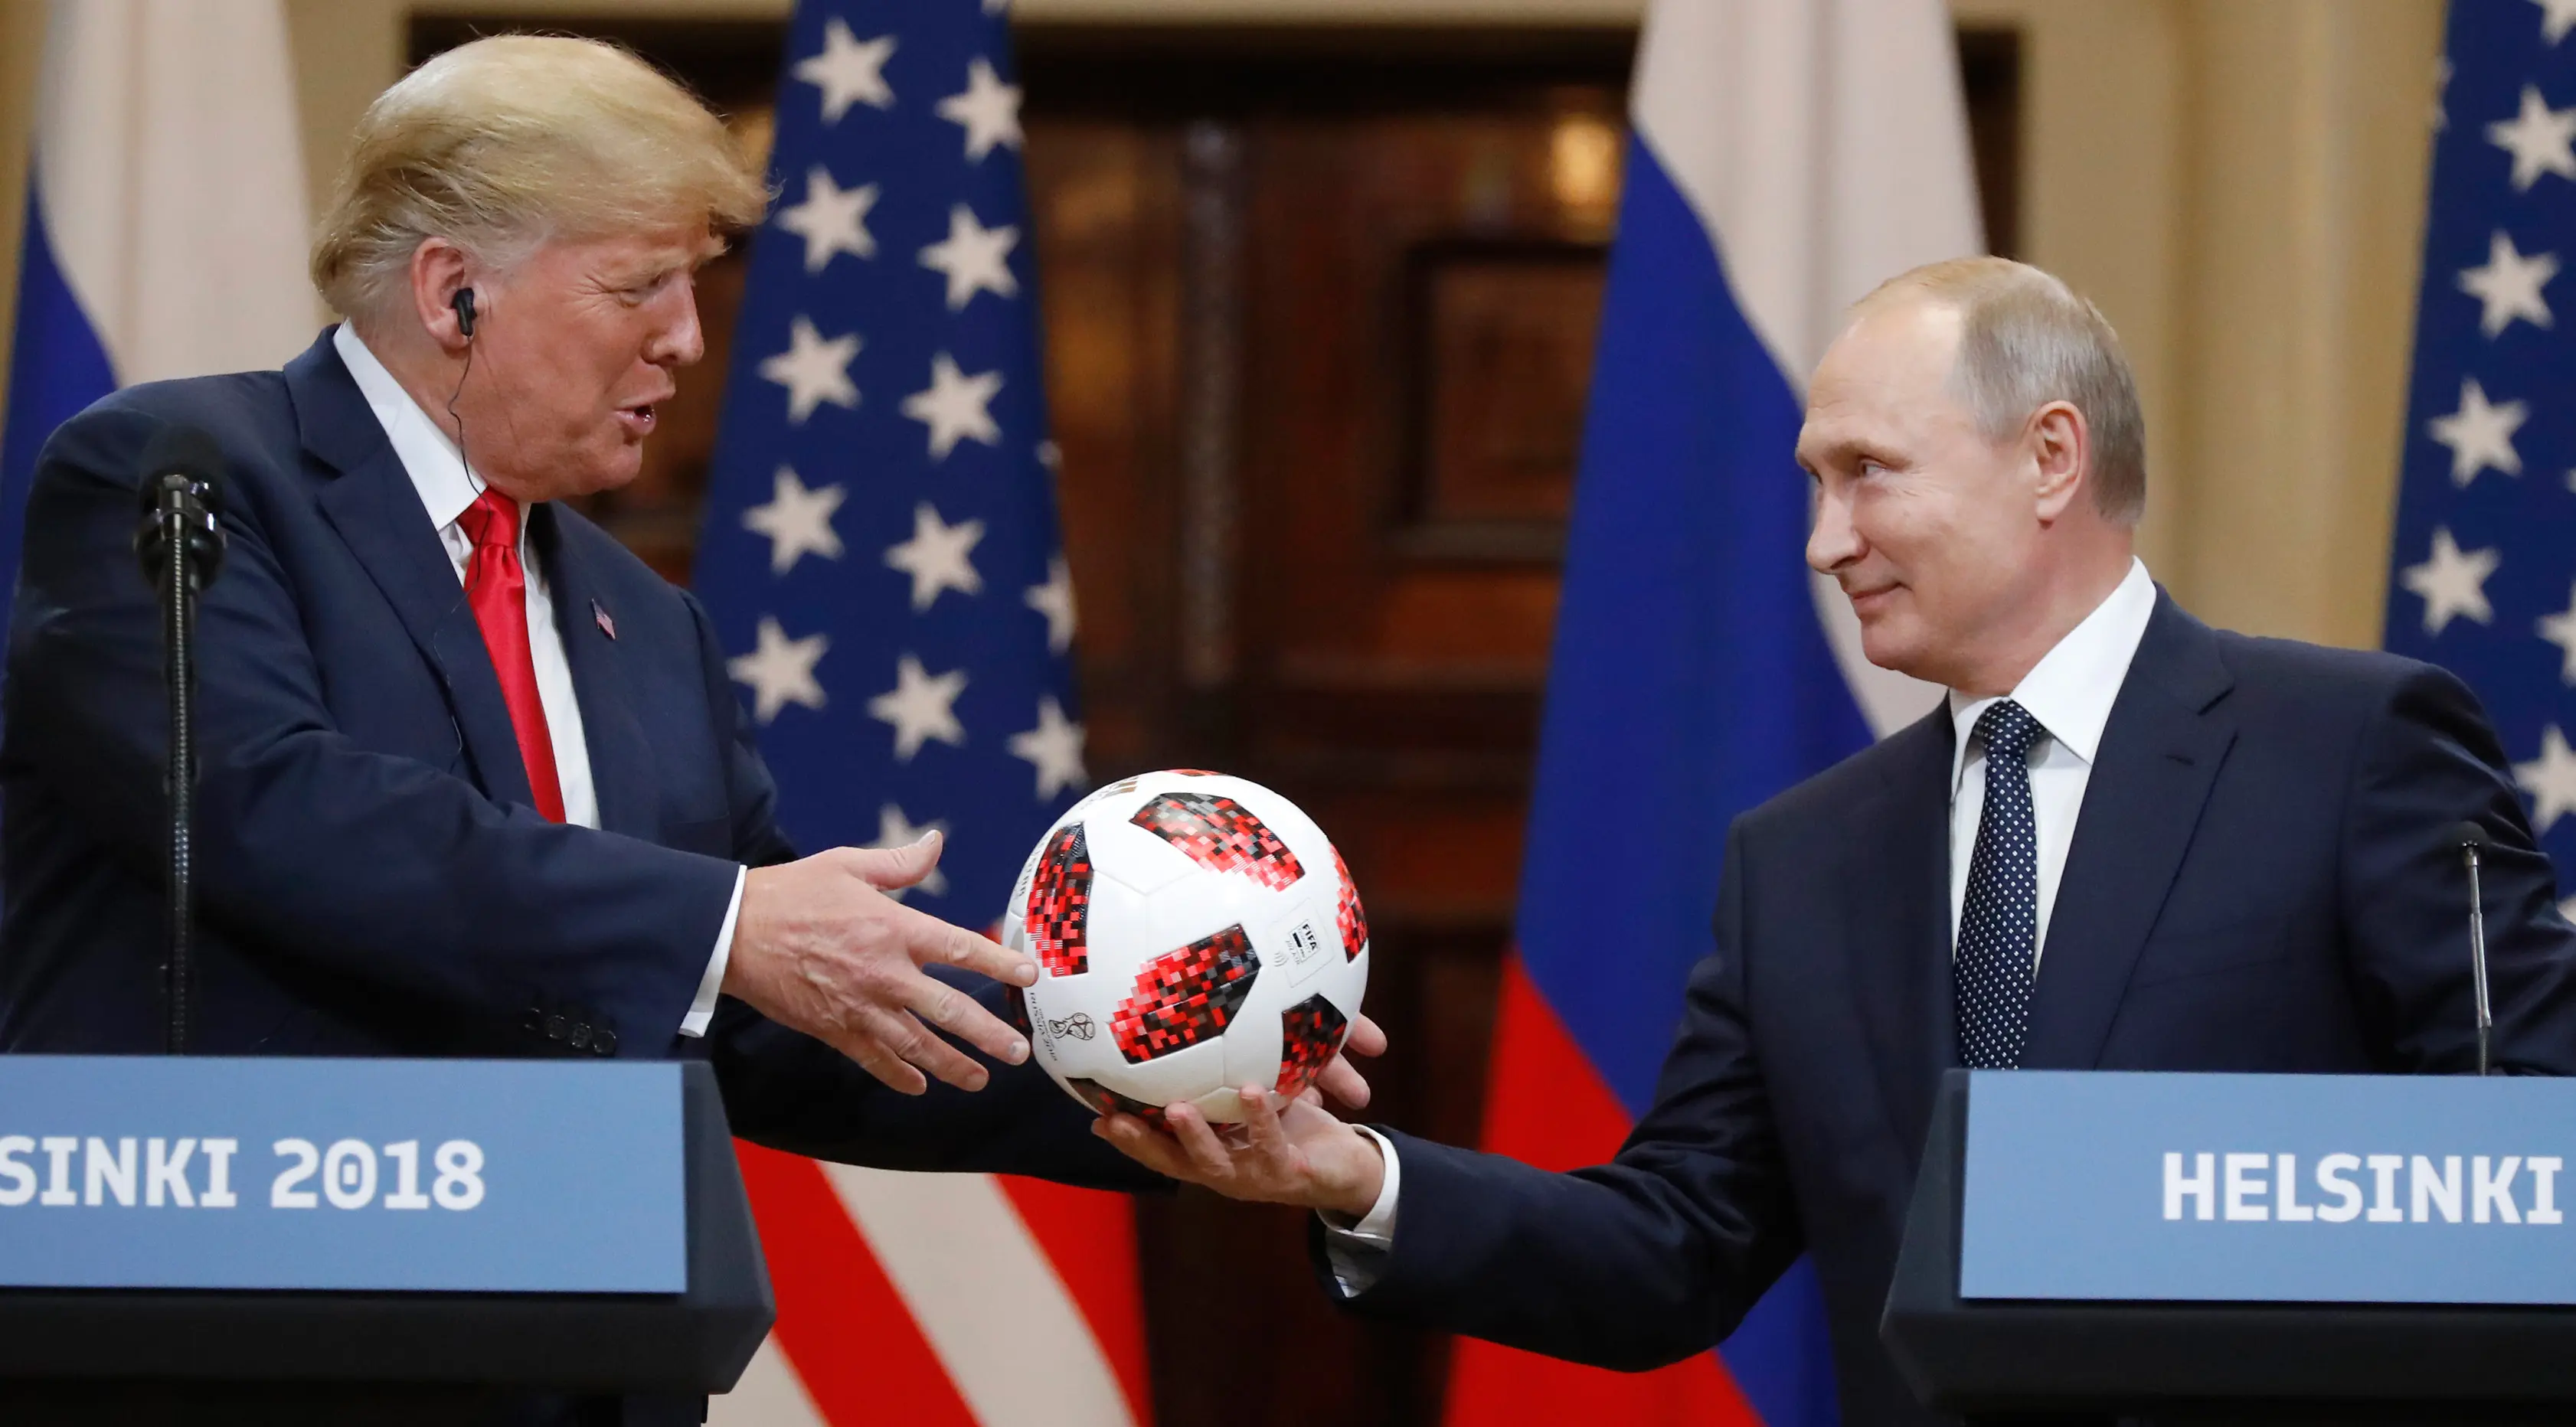 Presiden Rusia Vladimir Putin memberikan bola Piala Dunia 2018 kepada Presiden Amerika Serikat, Donald Trump selama konferensi pers bersama usai pertemuan mereka di Istana Presiden di Helsinki, Finlandia, Senin (16/7). (AP/Alexander Zemlianichenko)